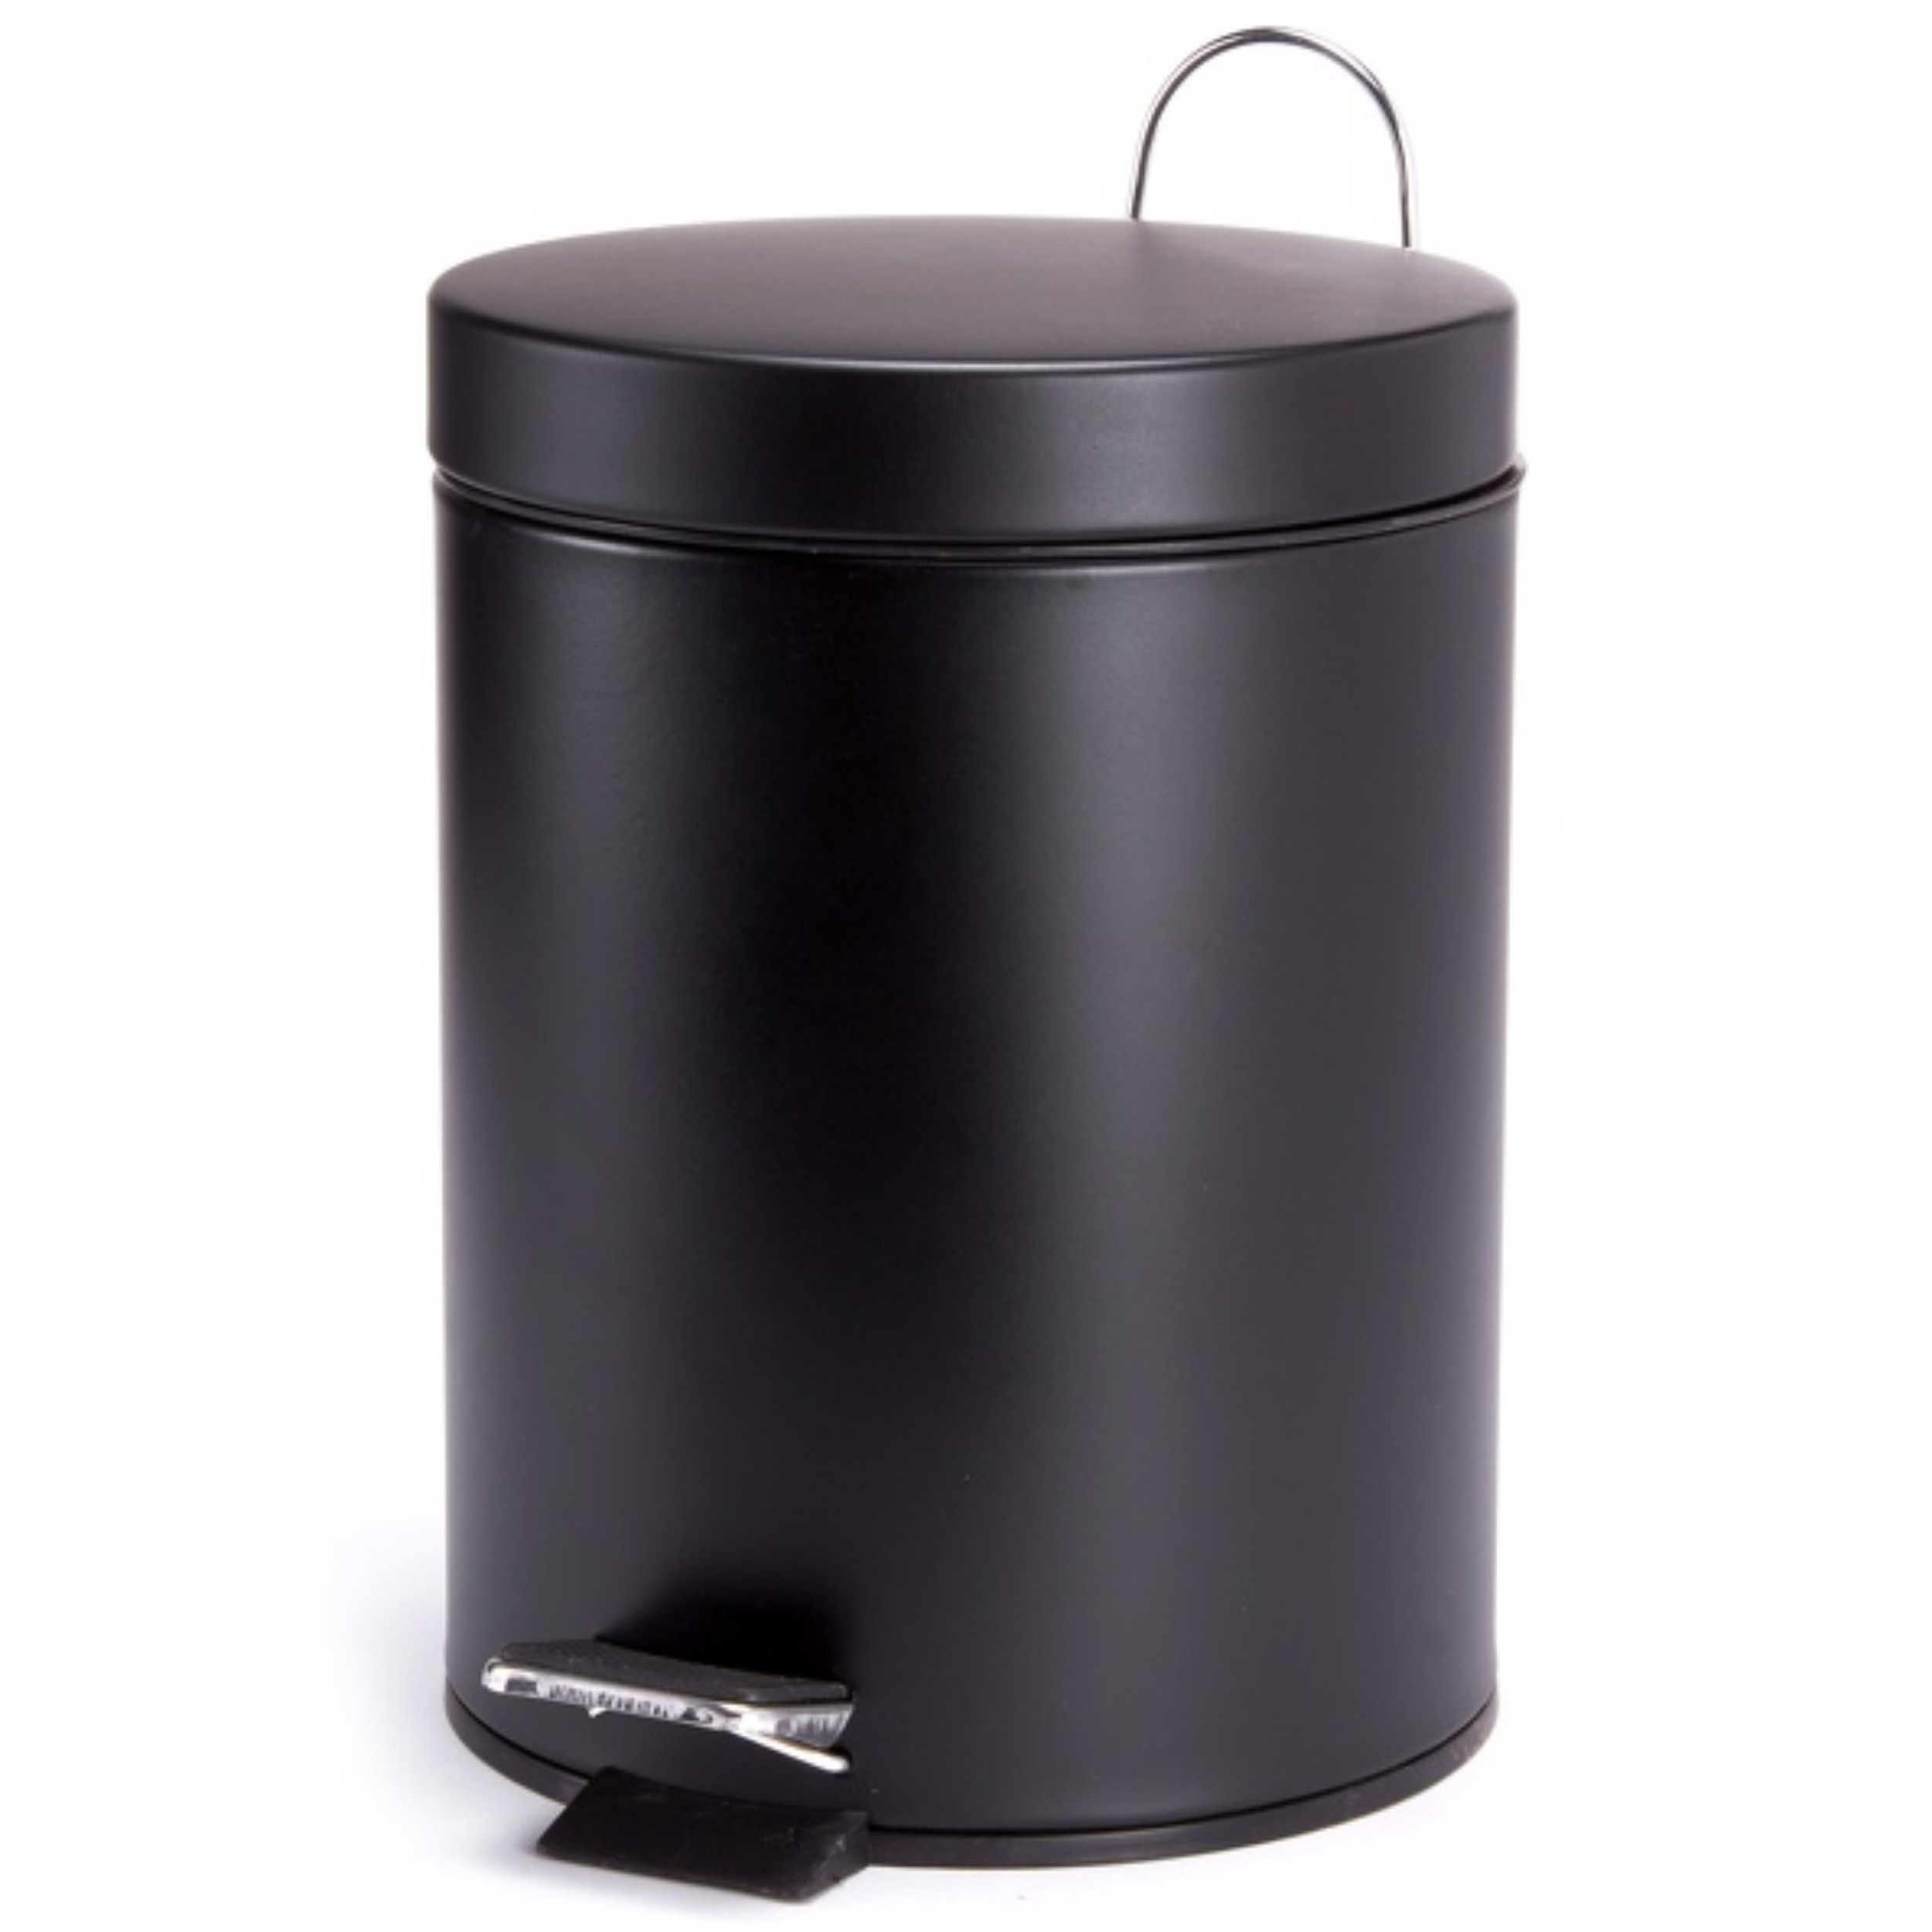 Prullenbak-pedaalemmer metaal zwart 5 liter 20 x 28 cm Badkamer-toilet